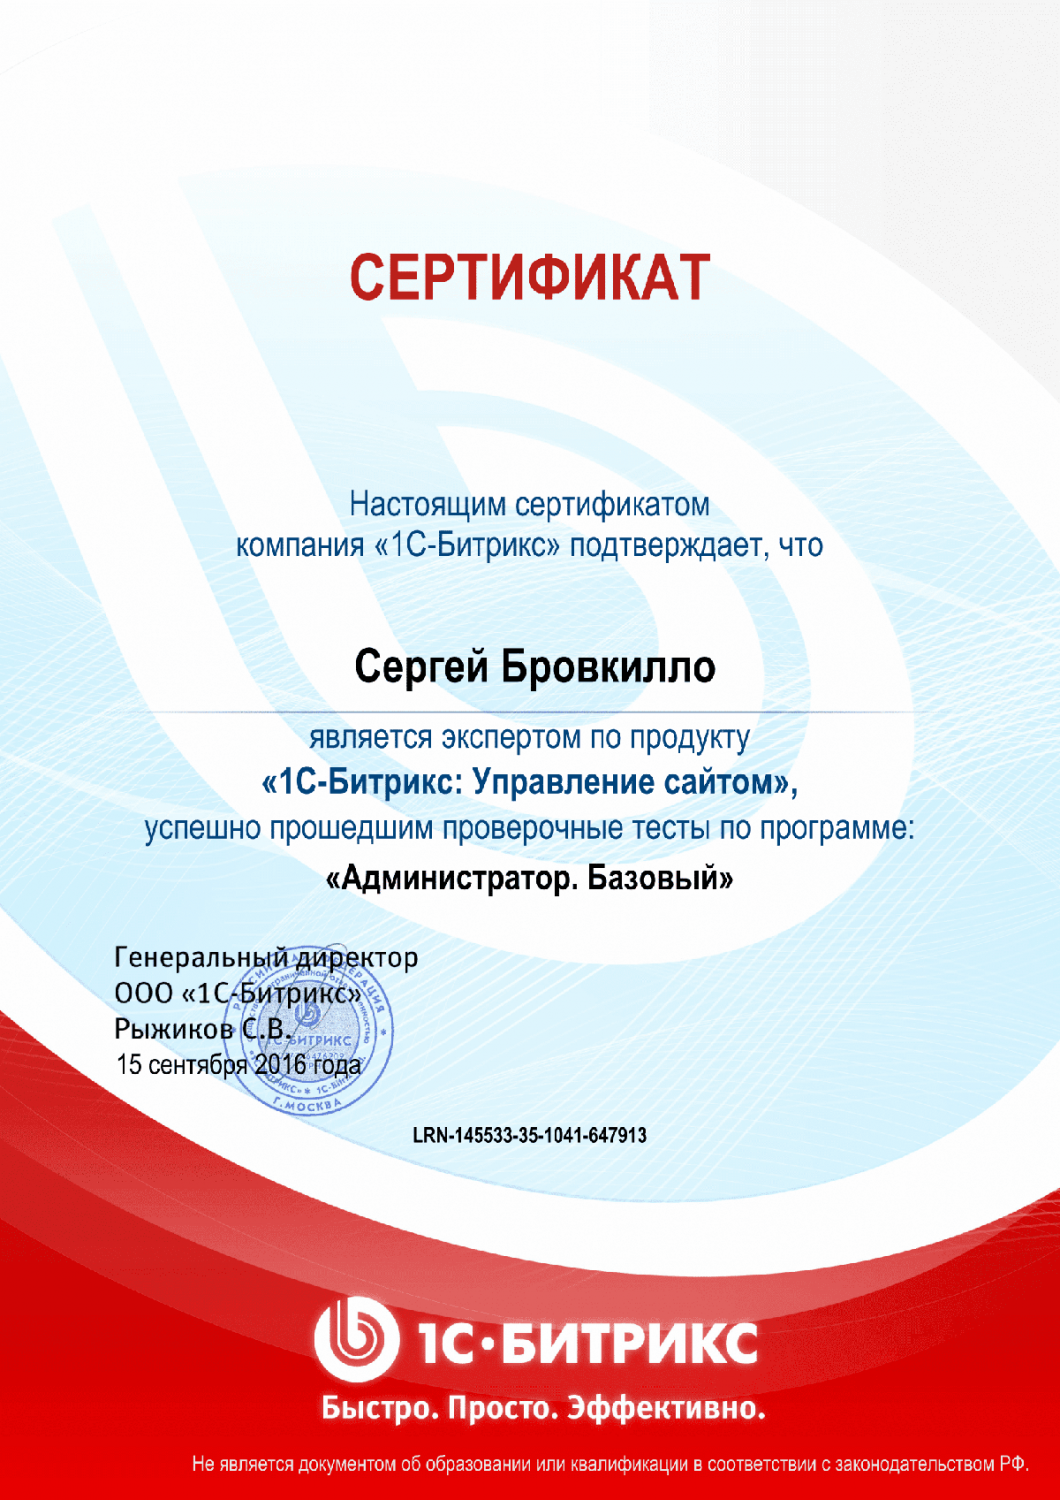 Сертификат эксперта по программе "Администратор. Базовый" в Калининграда